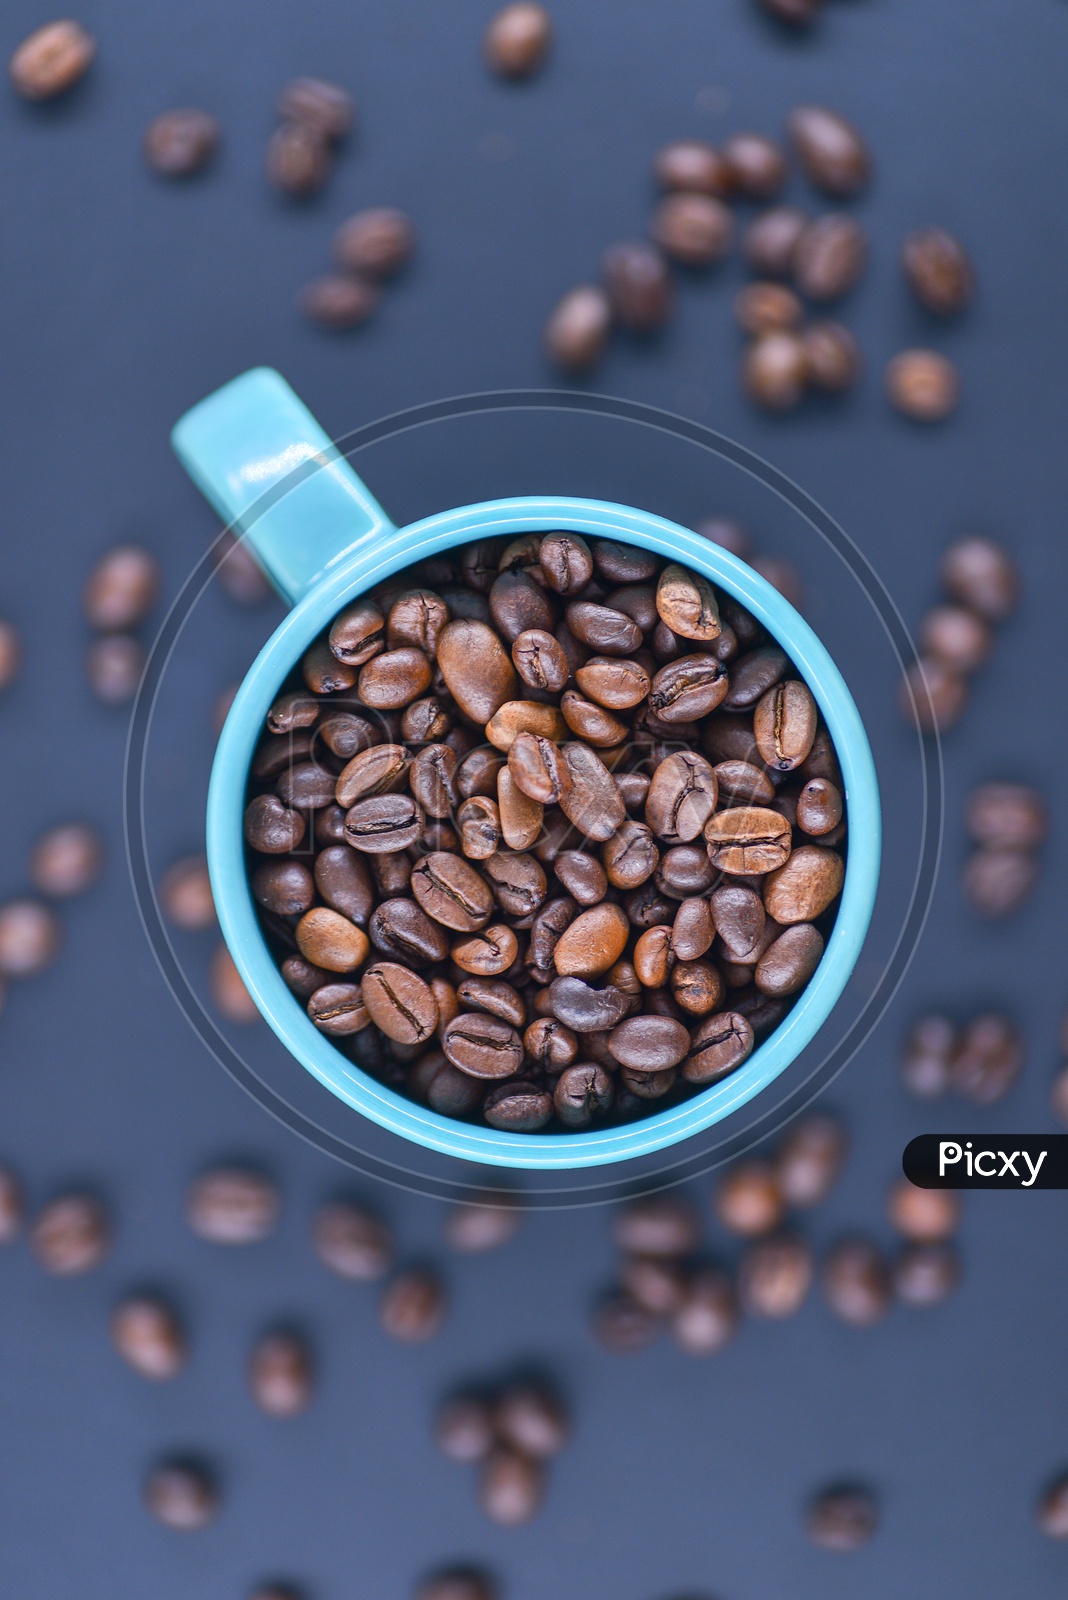 Coffee beans in a blue coffee mug on a dark blue background